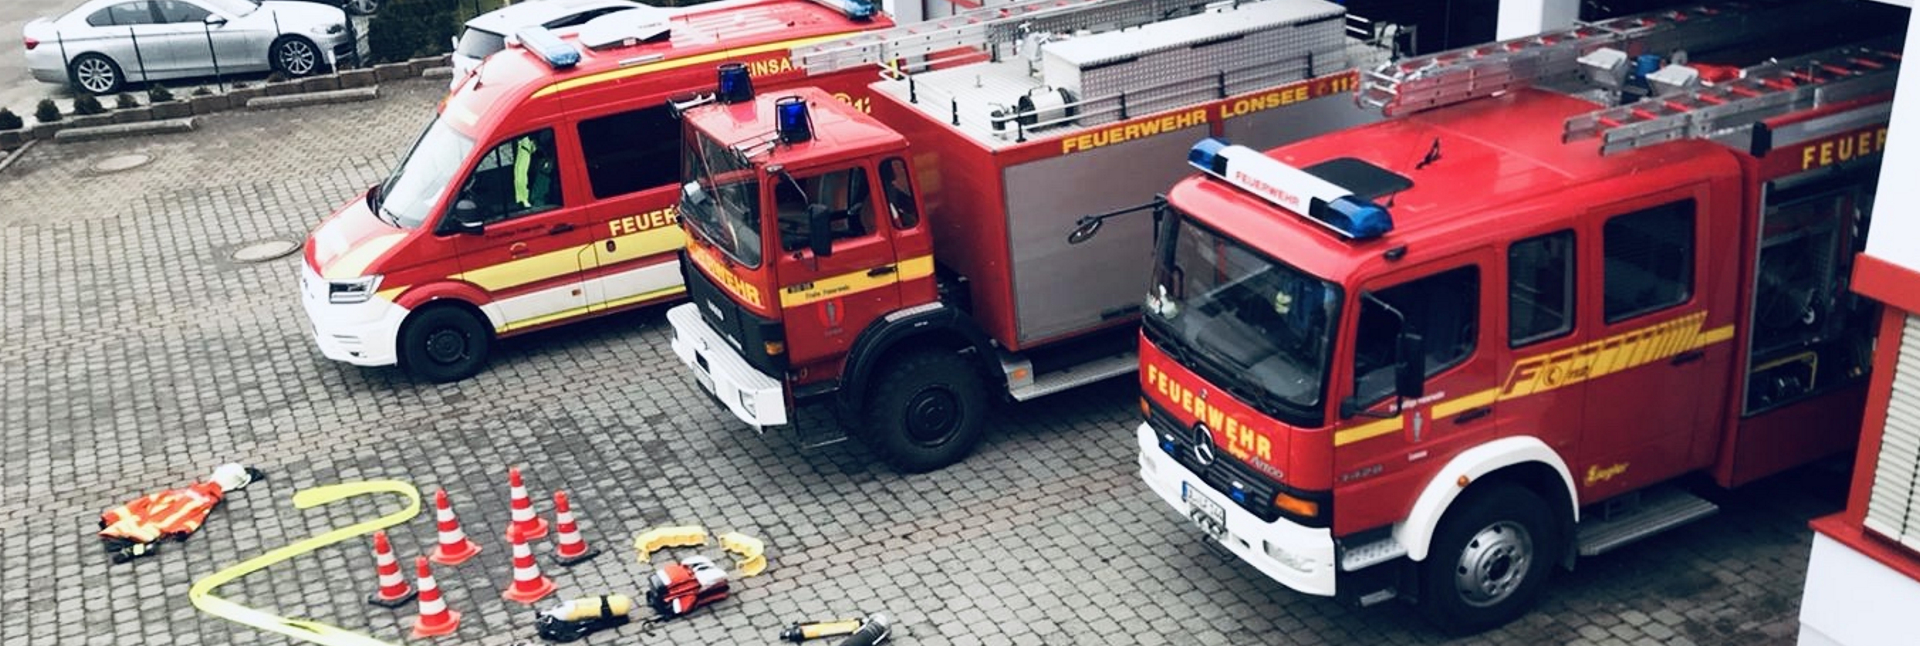 Wechselbild der Feuerwehr Lonsee